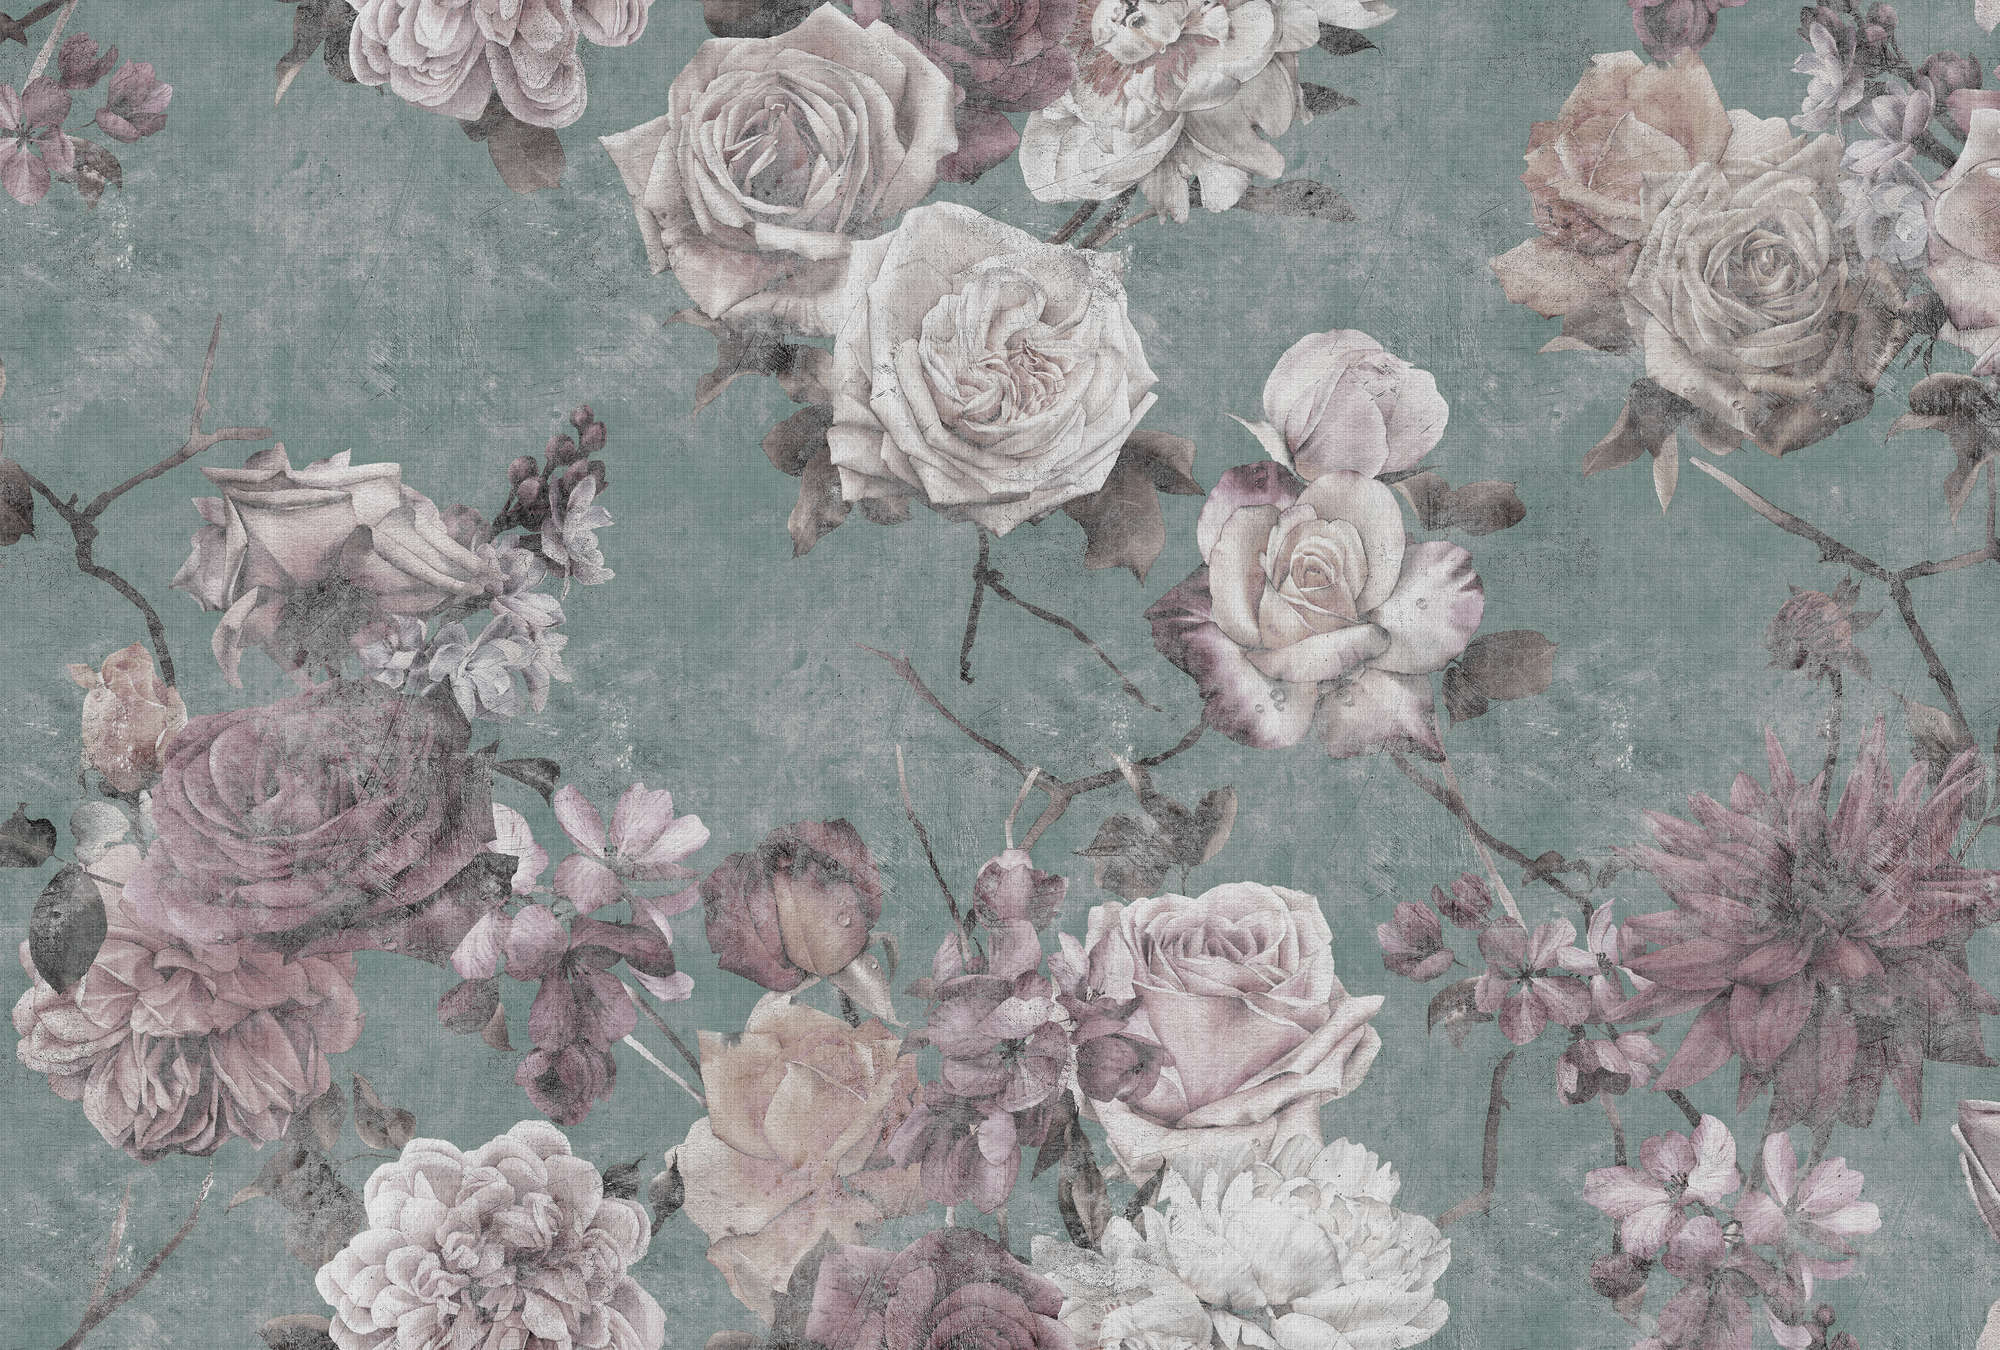             Sleeping Beauty 2 - Papier peint vintage Fleurs de roses - À structure lin naturel - rose, turquoise | Intissé lisse mat
        